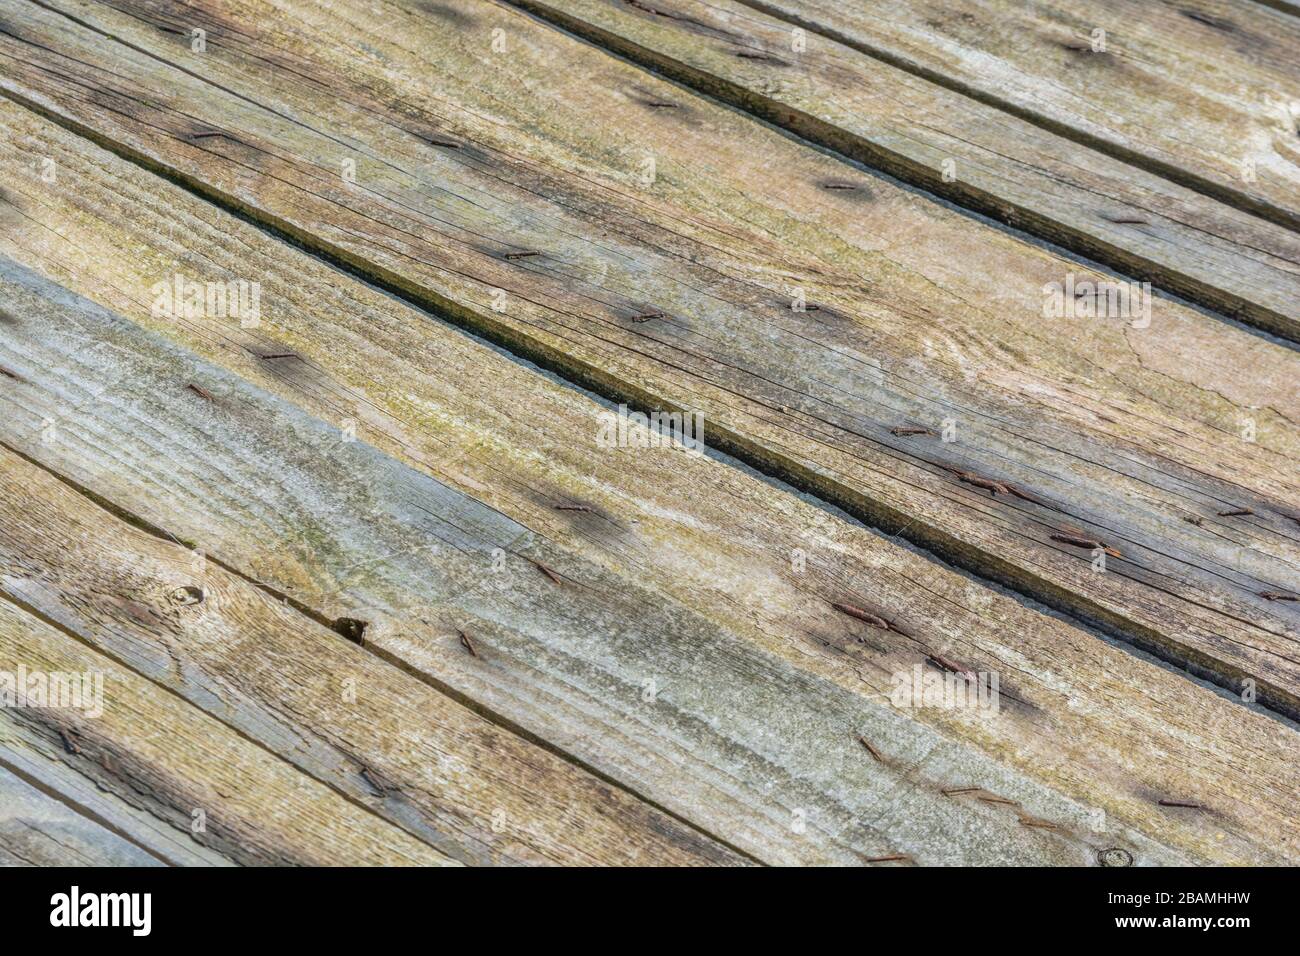 Verwitterte Holzlatten eines Hühnerkoop-Dachs auf einem Bauernhof. Anzeichen von Verwitterung und Alterung. Hintergrund mit Holzlatt-Struktur, Konzept mit geraden Linien. Stockfoto